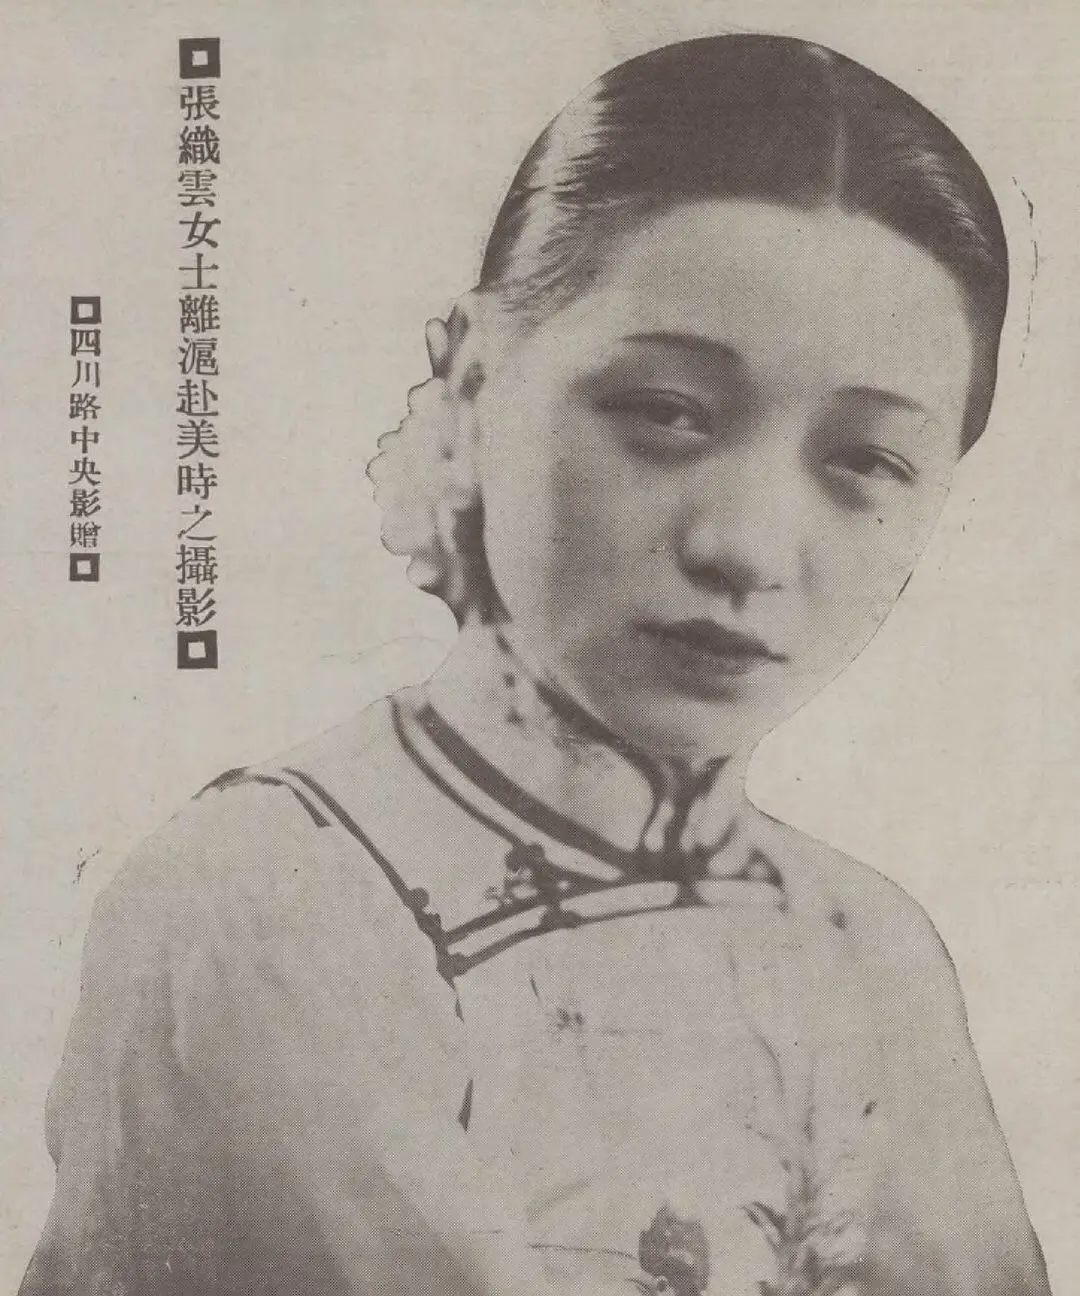 1927年可是张织云刚当上电影皇后的 第二年呐……嗯,大约是被爱清冲